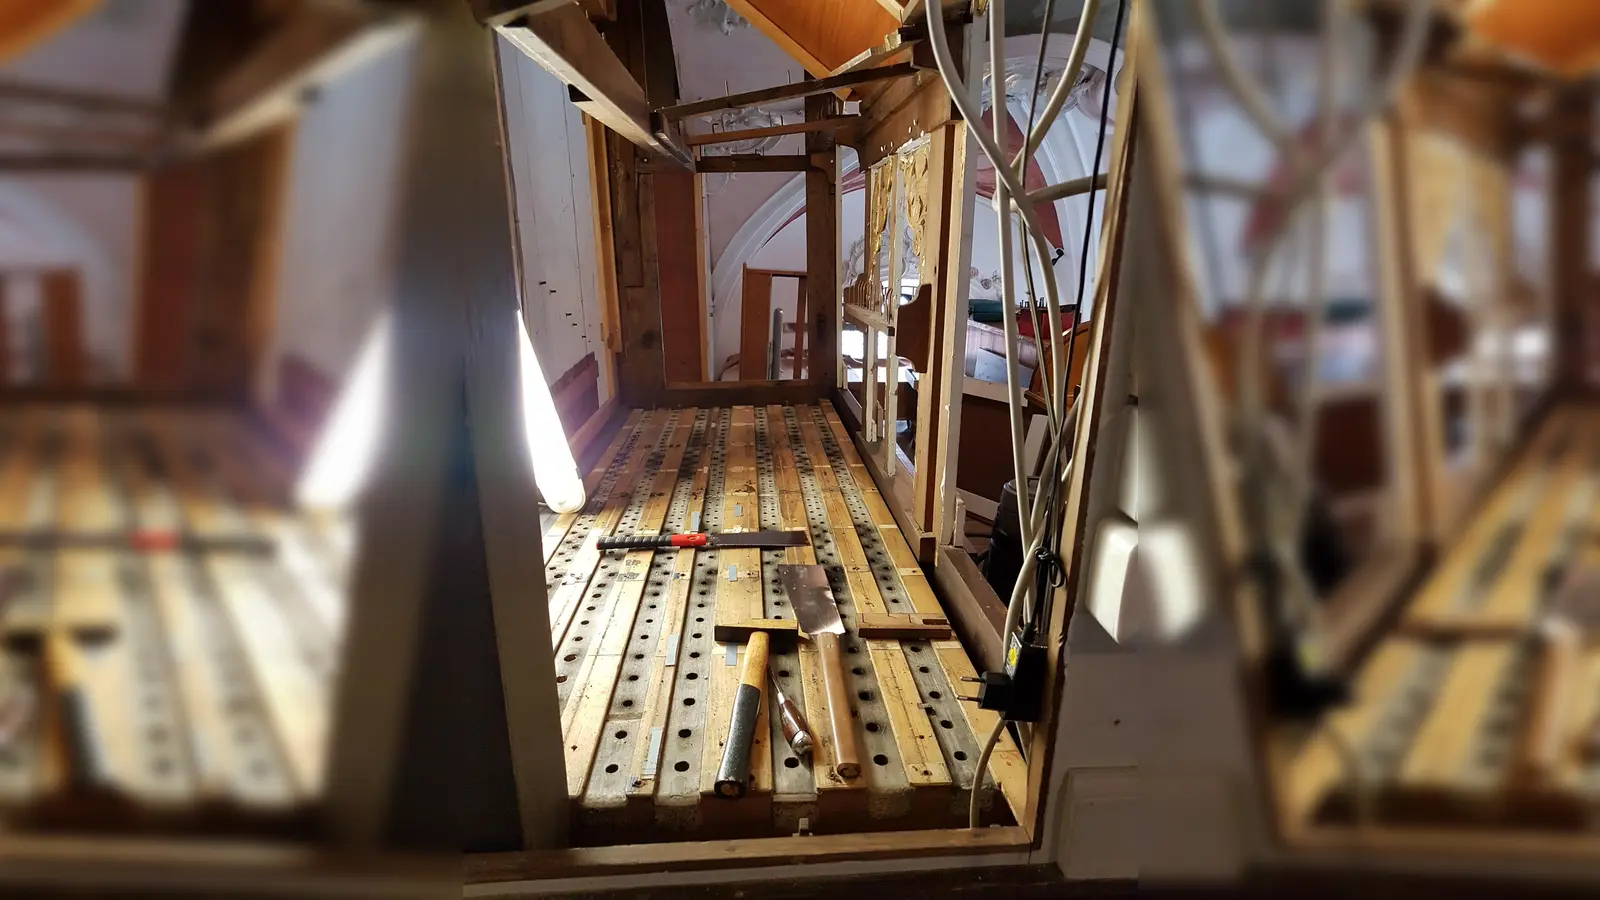 Schon bald wird die leere Hülle wieder mit Leben gefüllt: Die historische Bohl-Orgel in der Gebenhofener Pfarrkirche erfährt aktuell eine Generalüberholung.  (Foto: Andrea Engelhard)